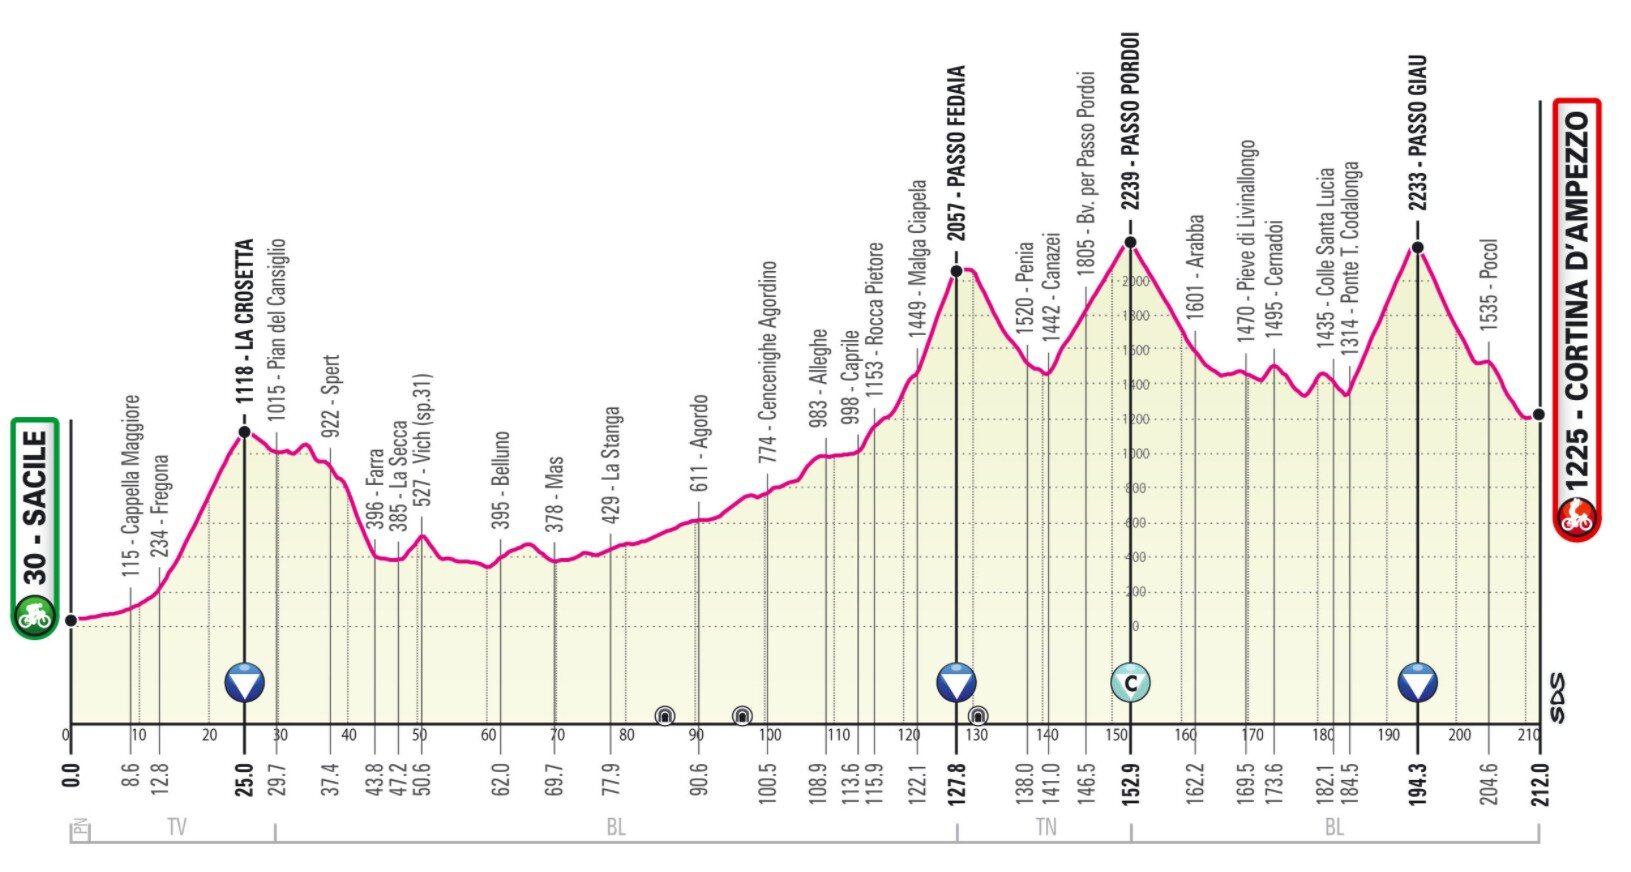 Etapa 16 Giro Italia 2021